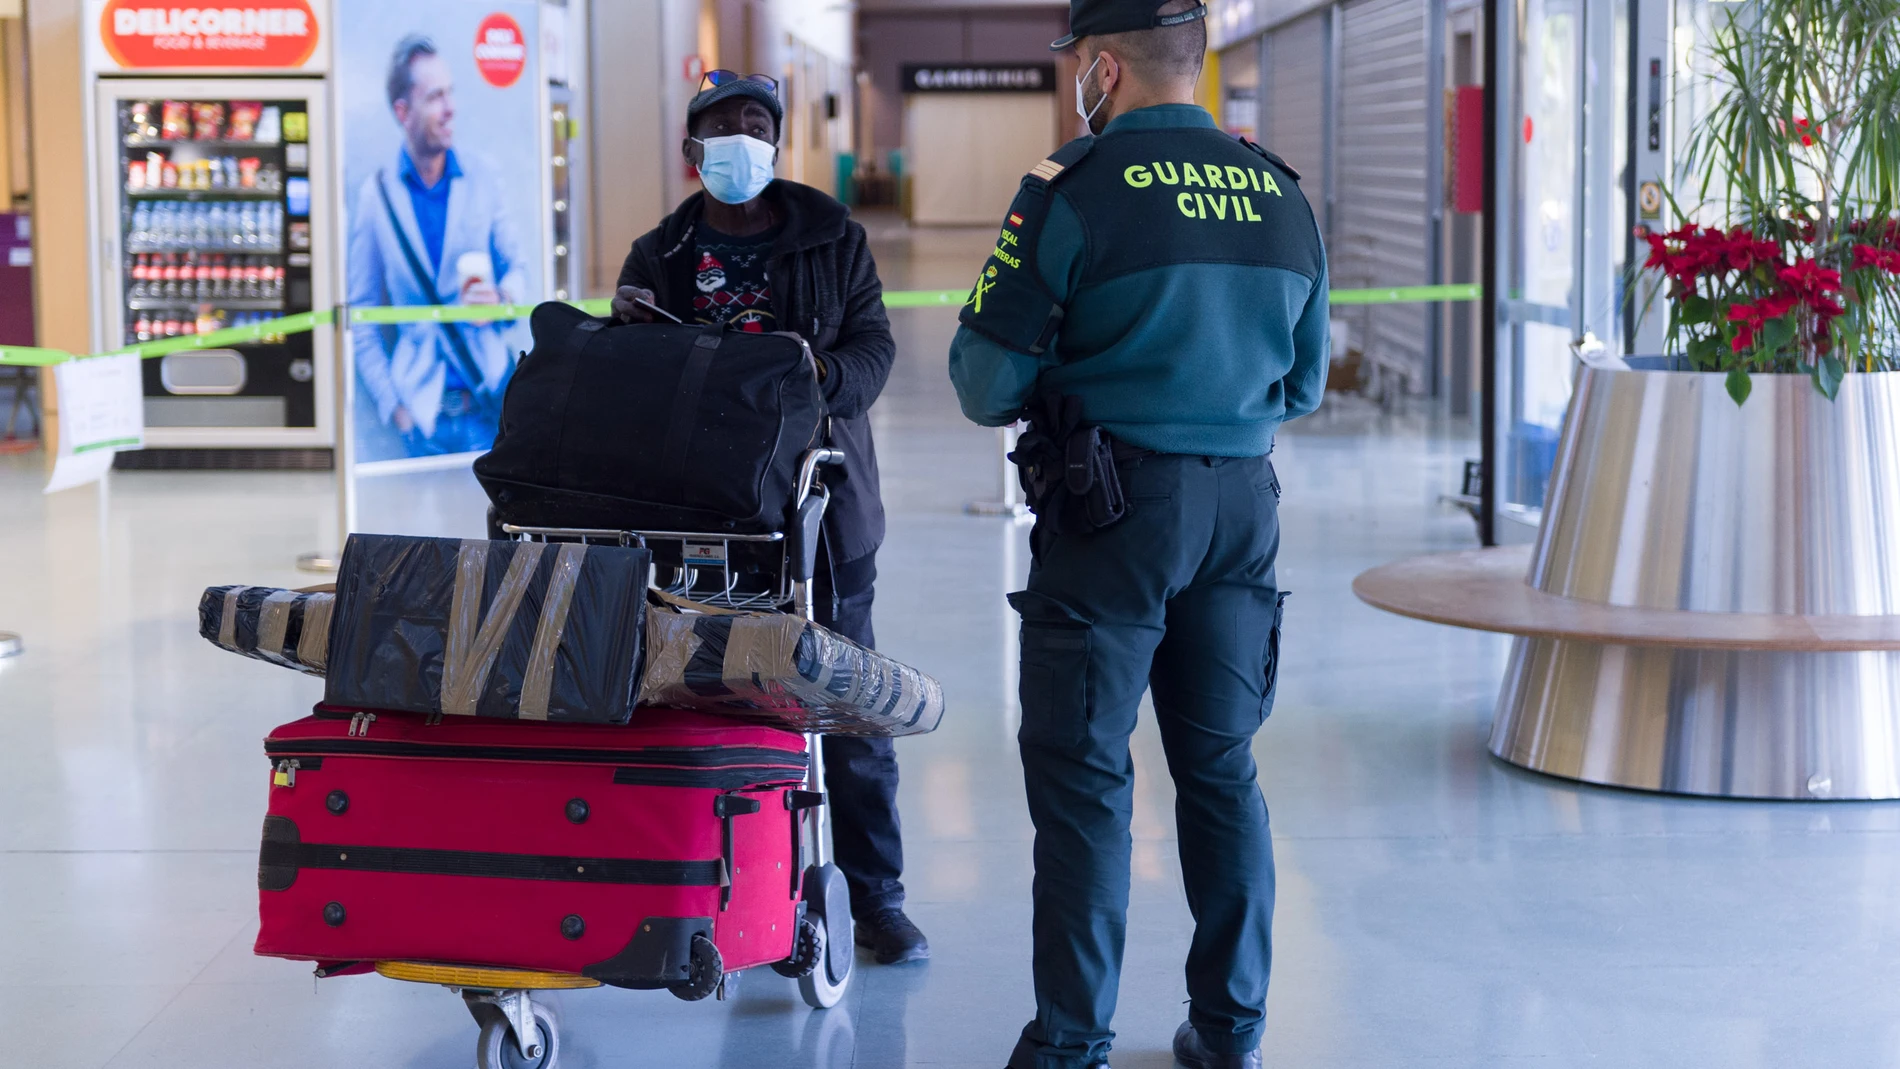 Agentes de la Guardia Civil presta servicio en un aeropuertoGermán Lama / Europa Press23/01/2021